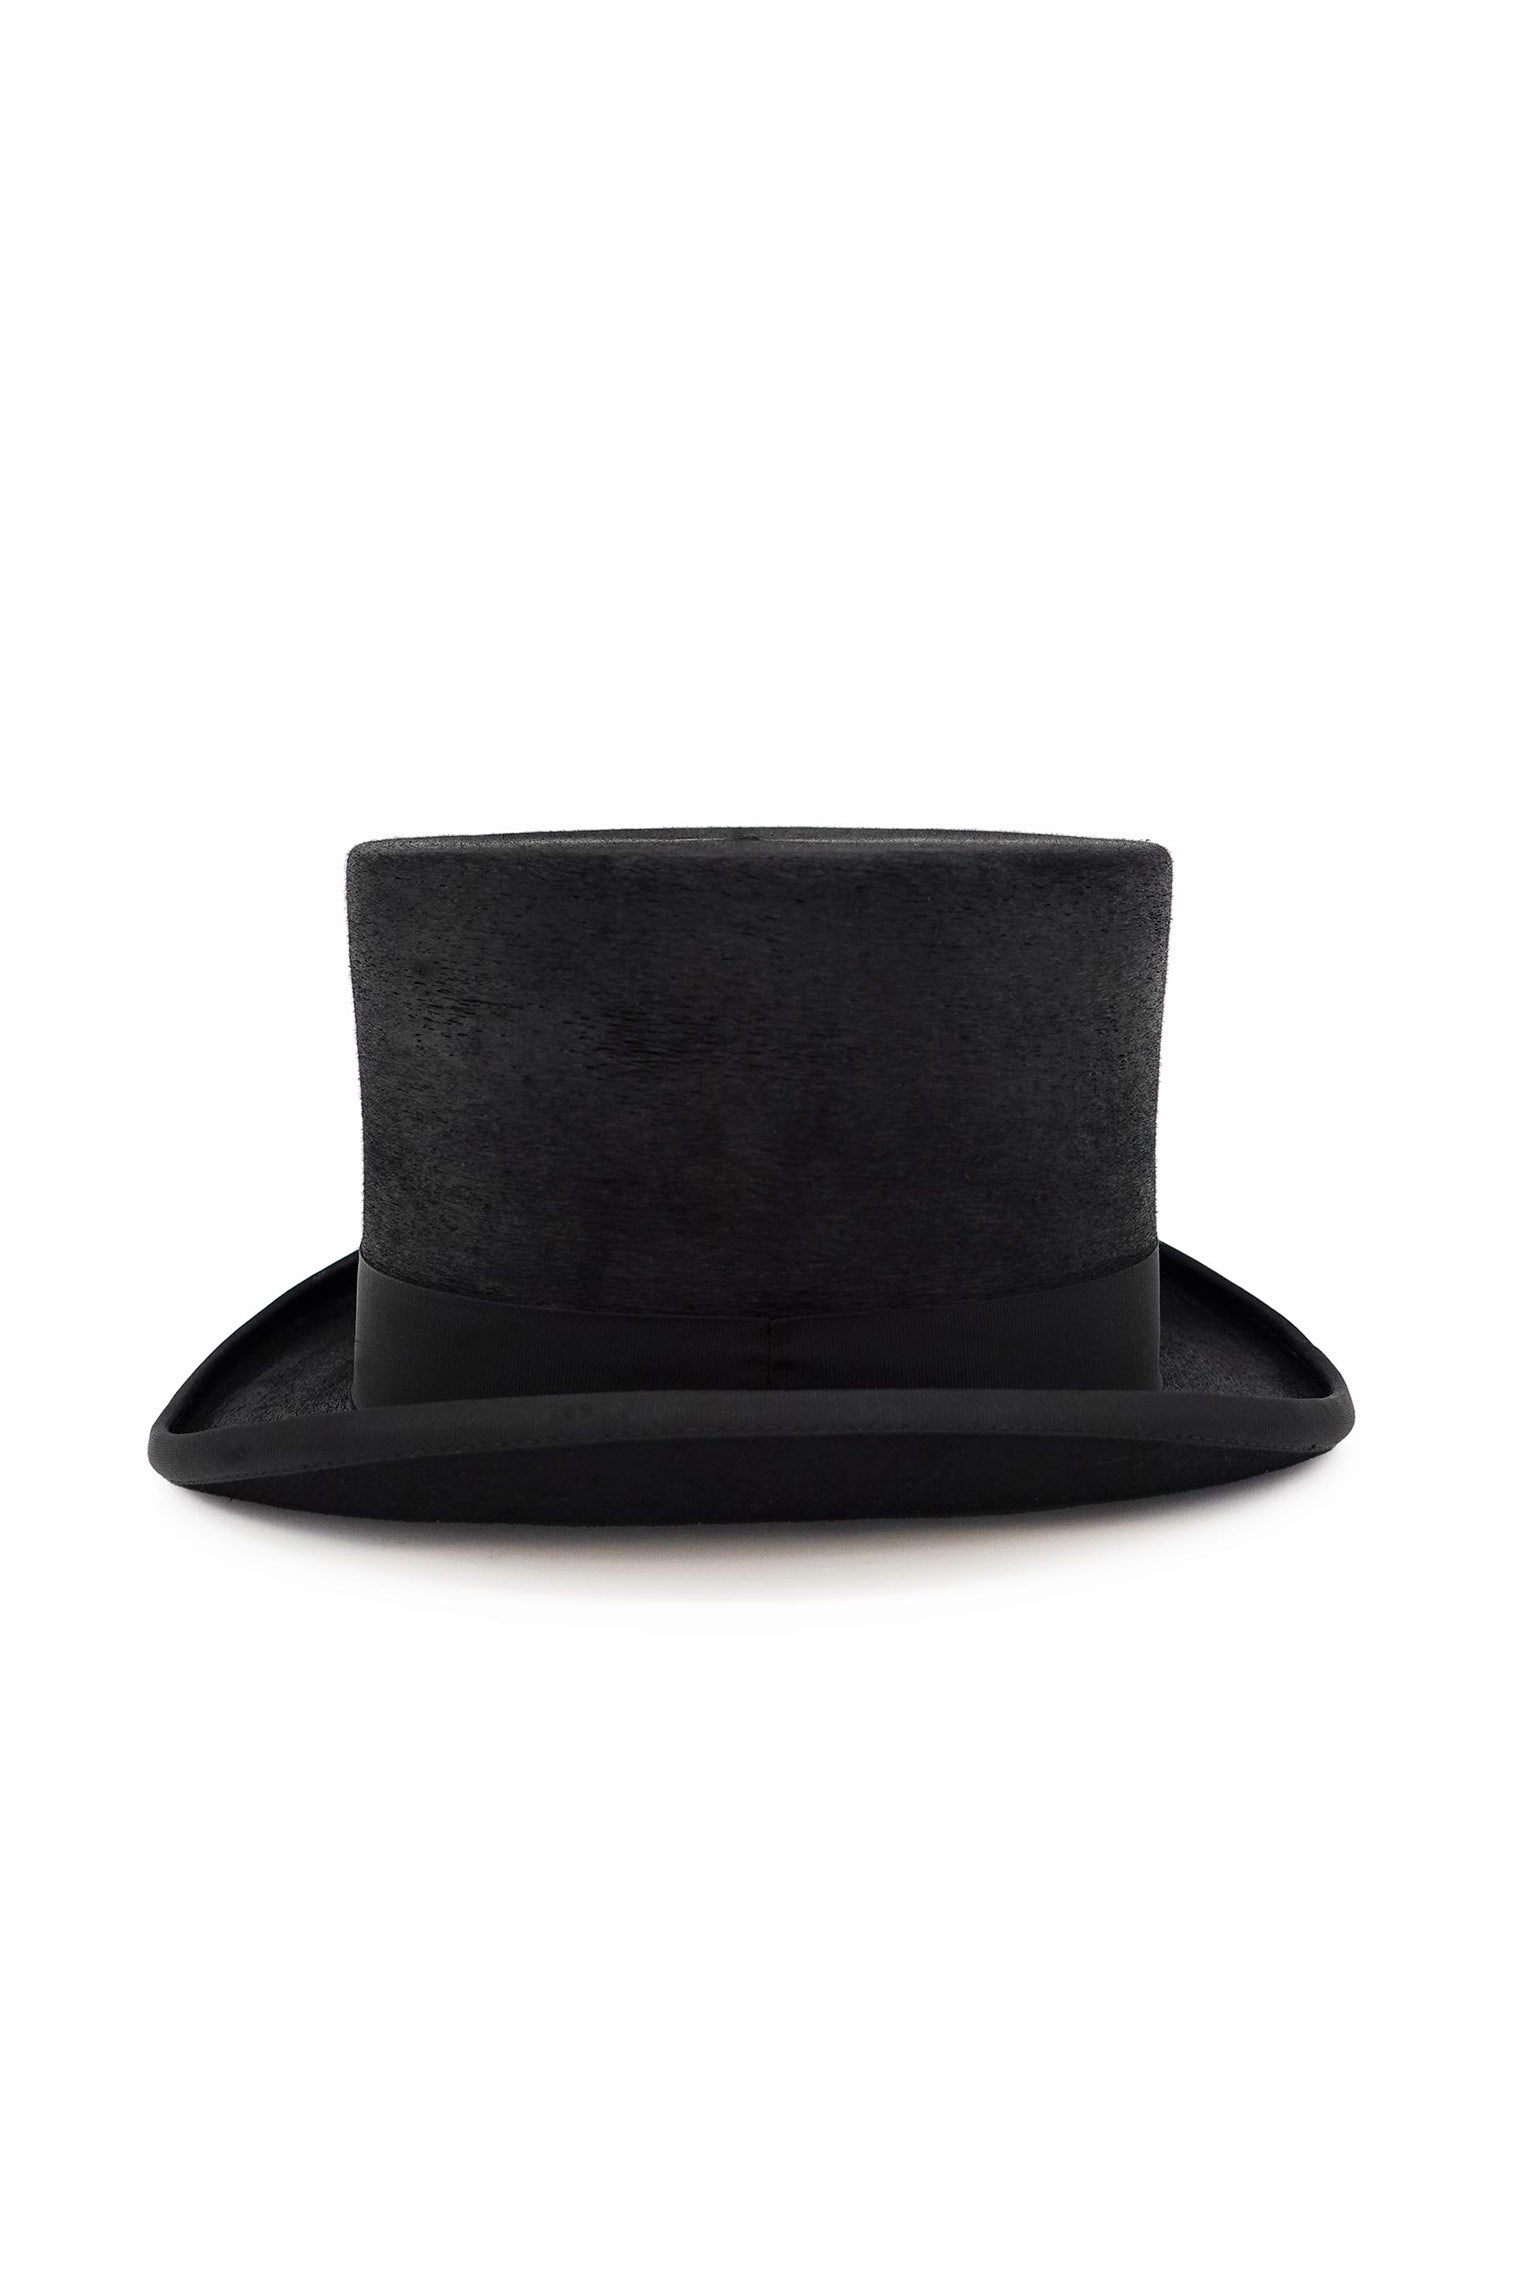 Mayfair Top Hat - Men's Hats - Lock & Co. Hatters London UK